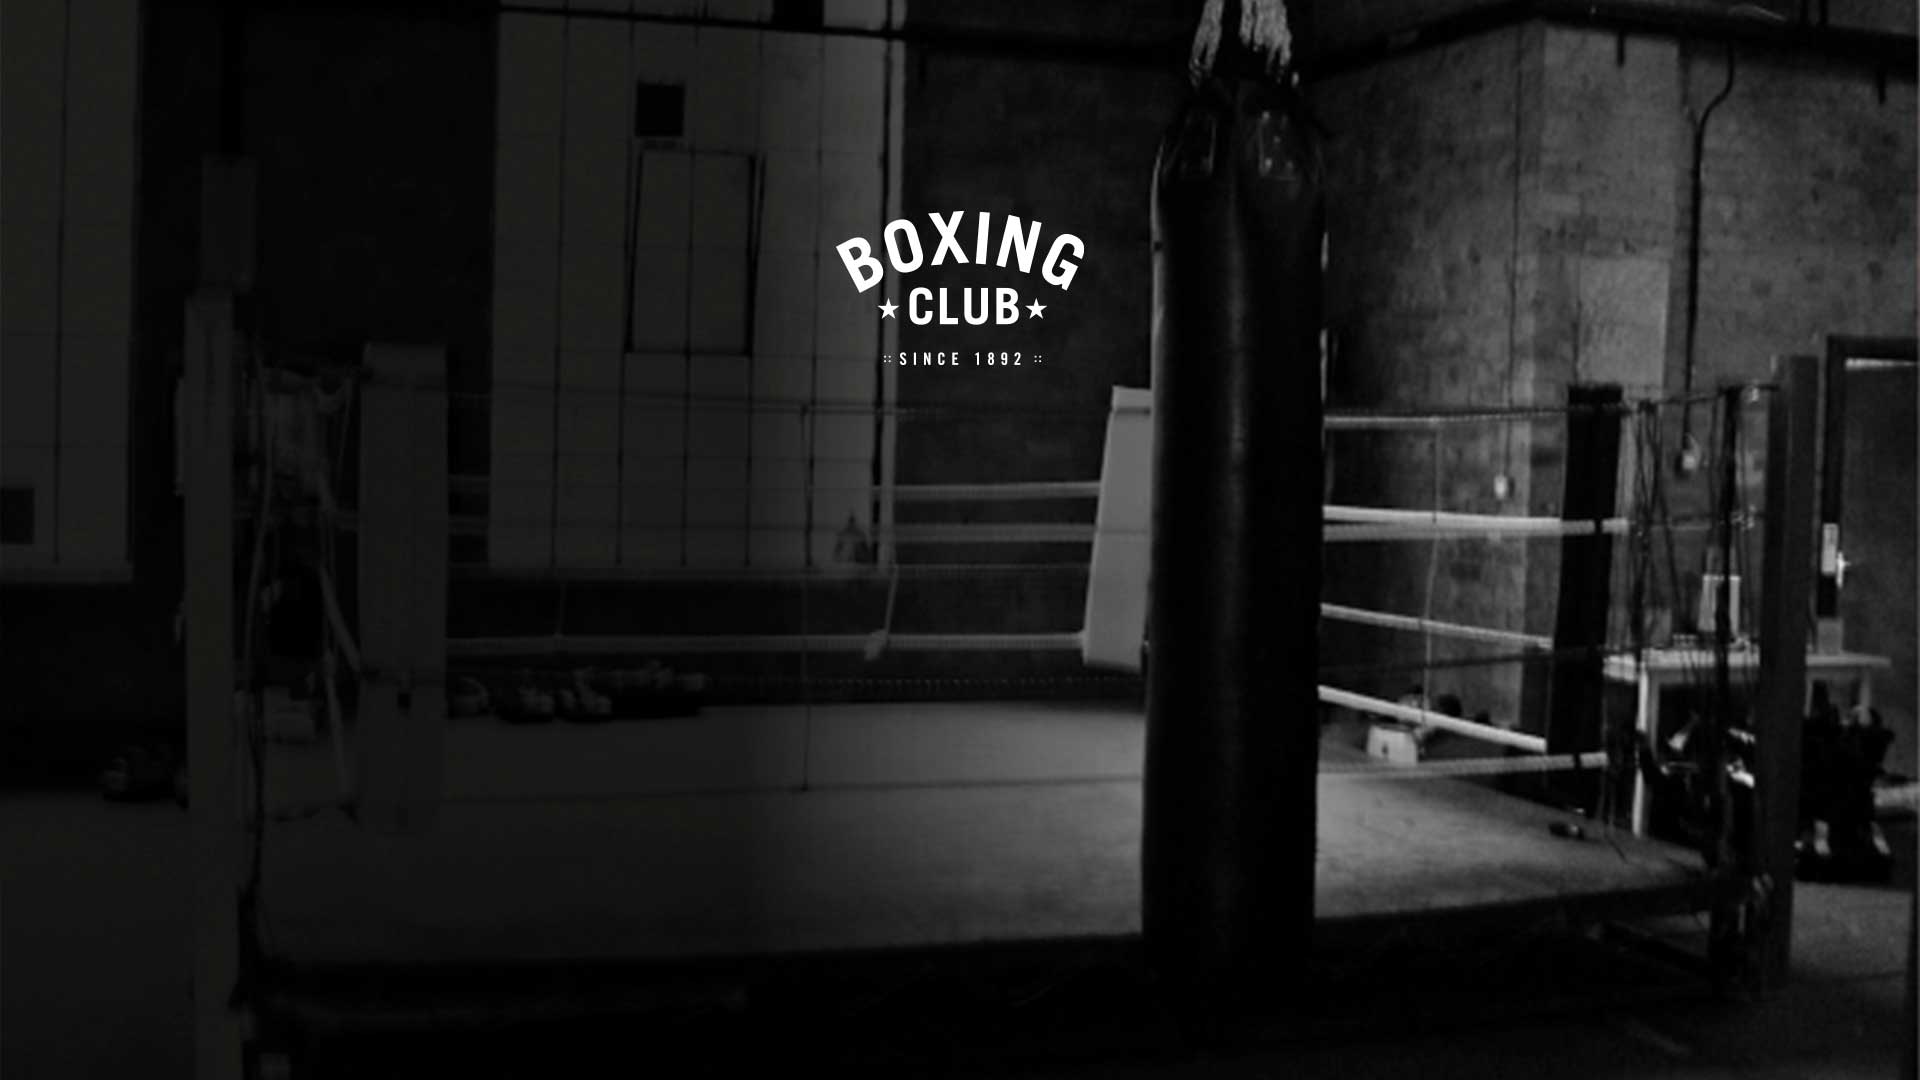 Boxing Clu- Superbrands